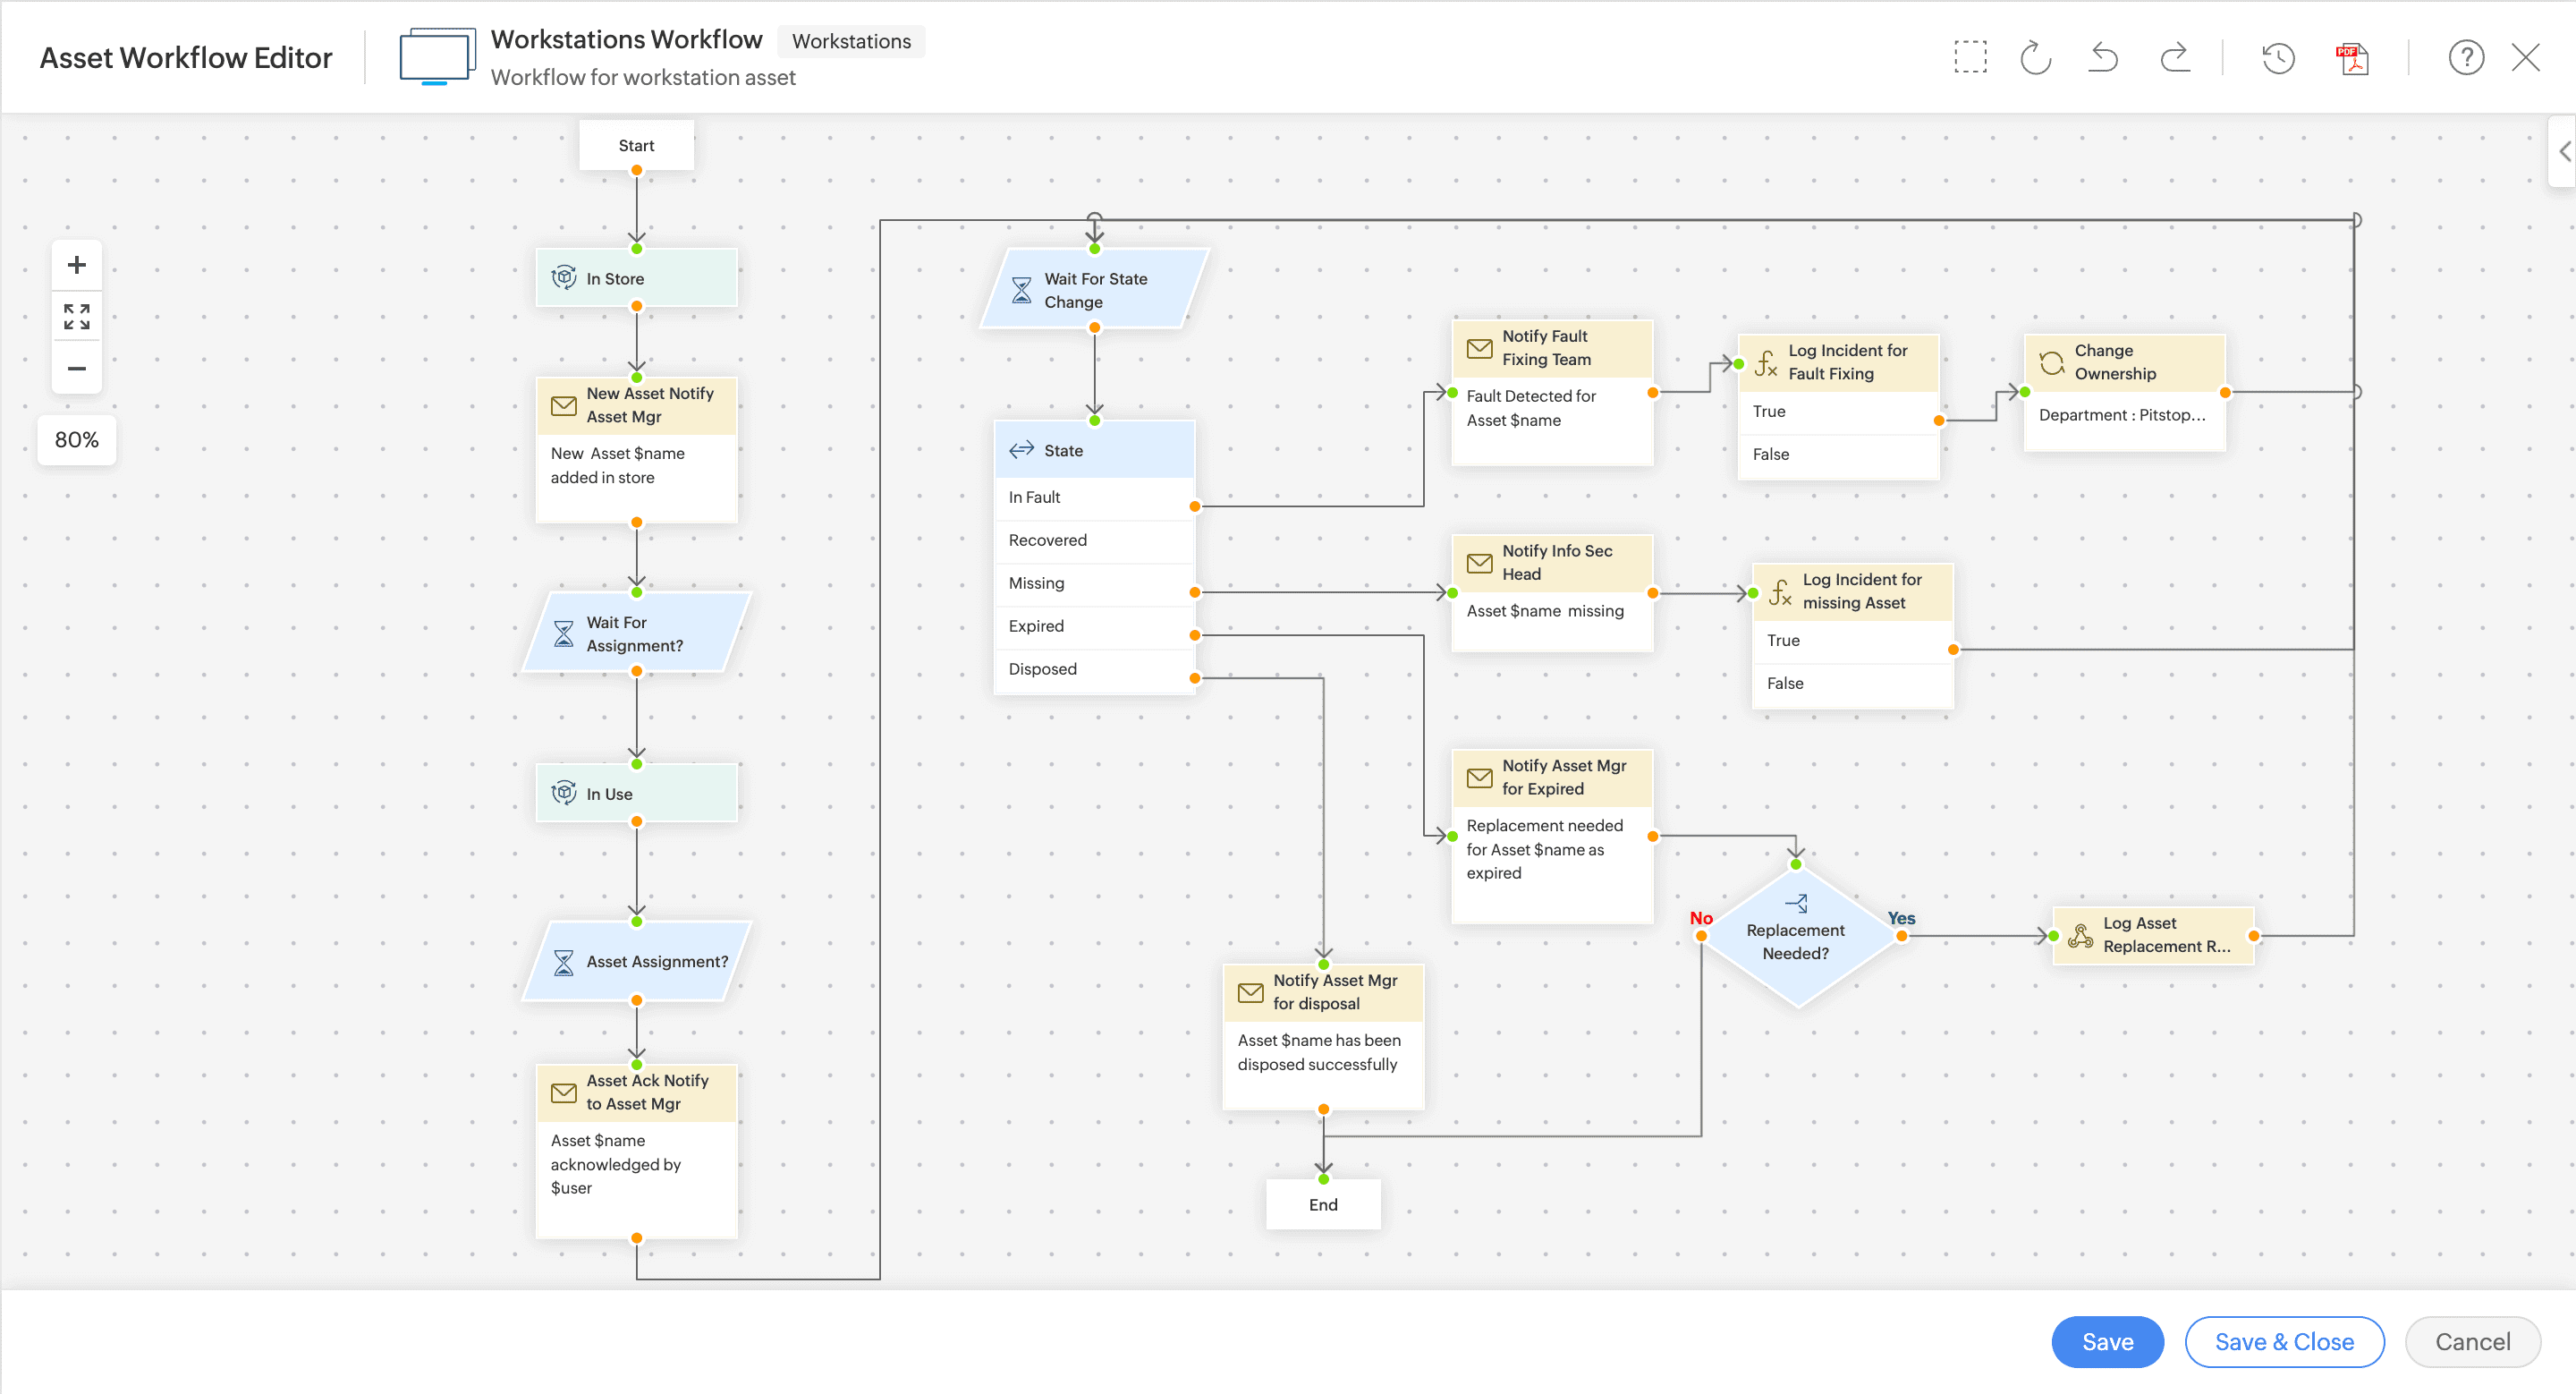 Sample Workflow - Asset